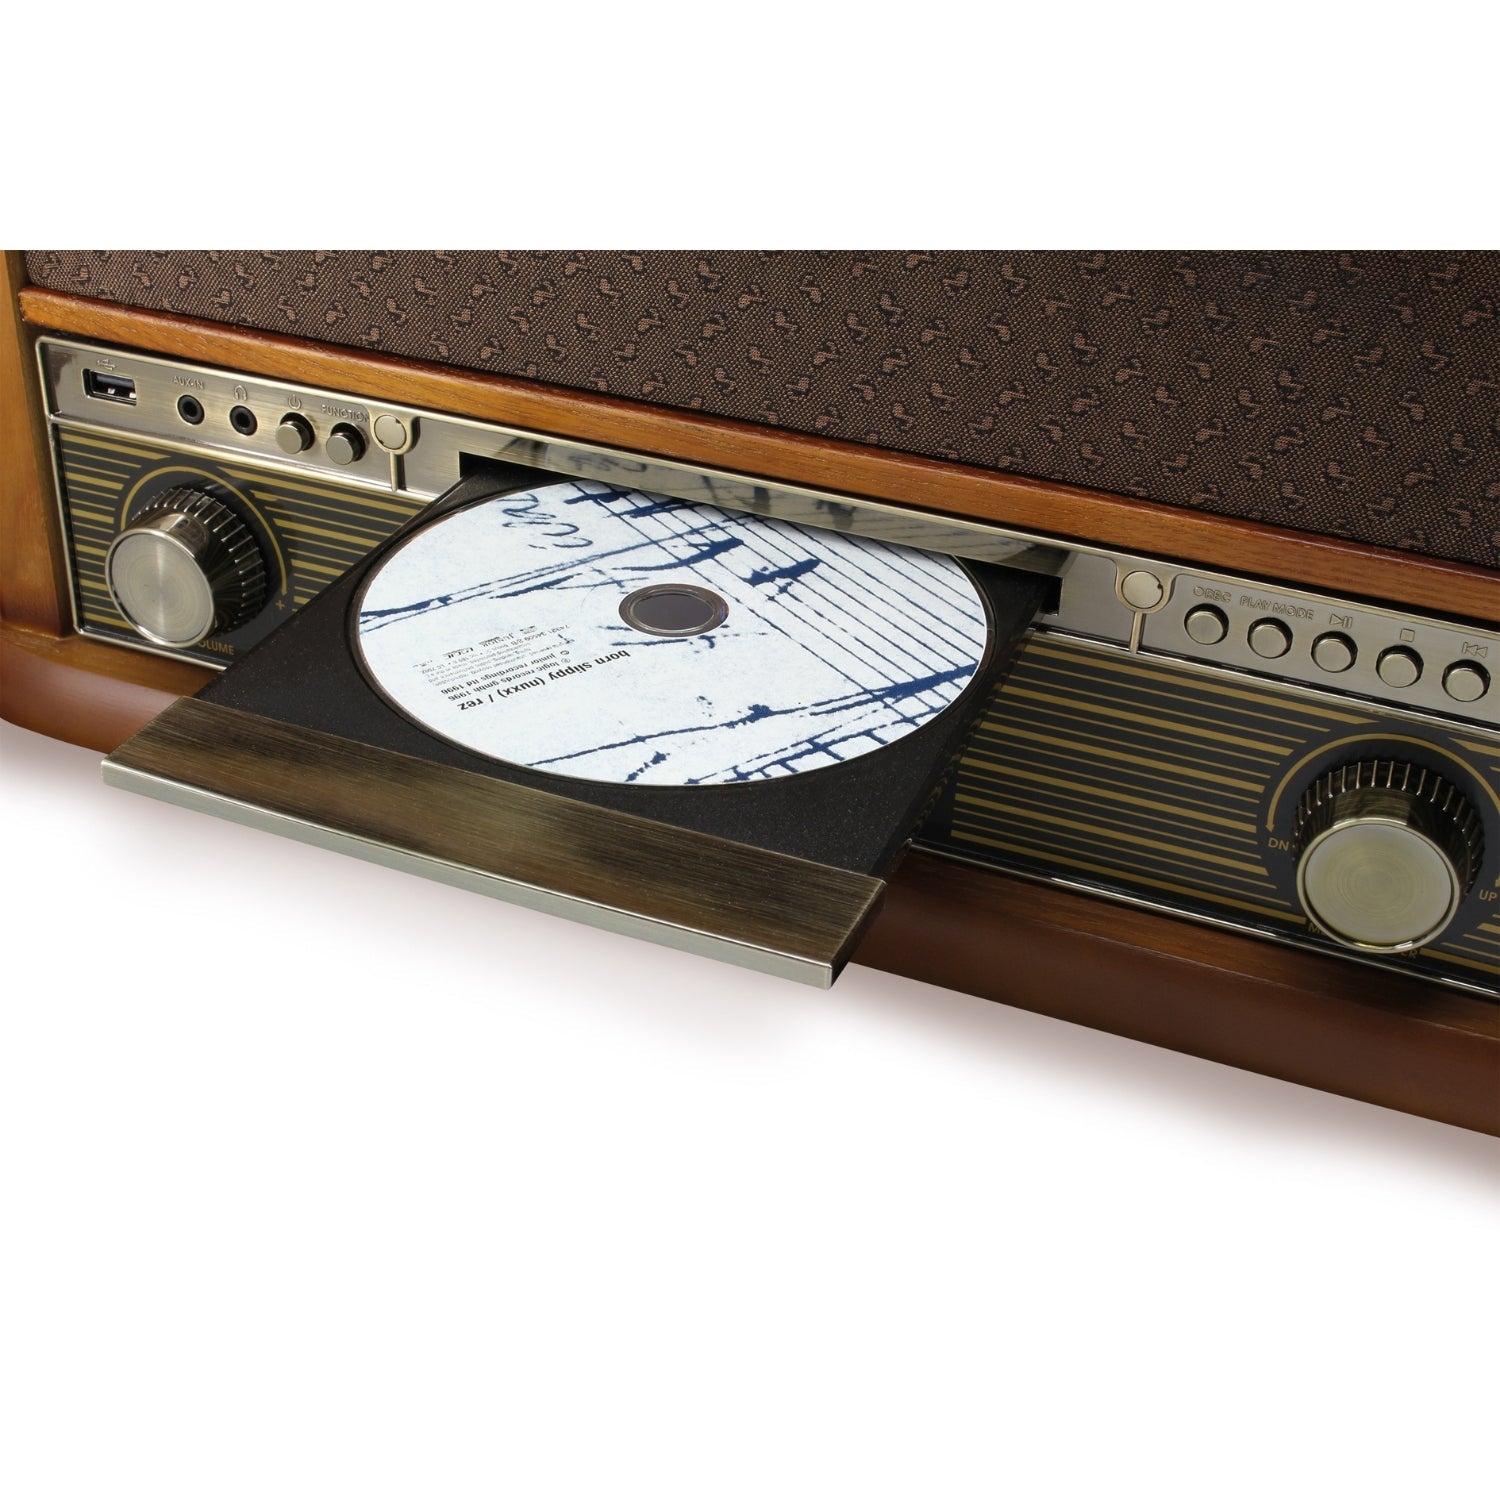 Soundmaster NR560 SET avec châssis SF510 Système stéréo nostalgique Système compact Platine vinyle Lecteur CD MP3 Encodage USB Lecteur de cassettes Connexion 75 Ohm